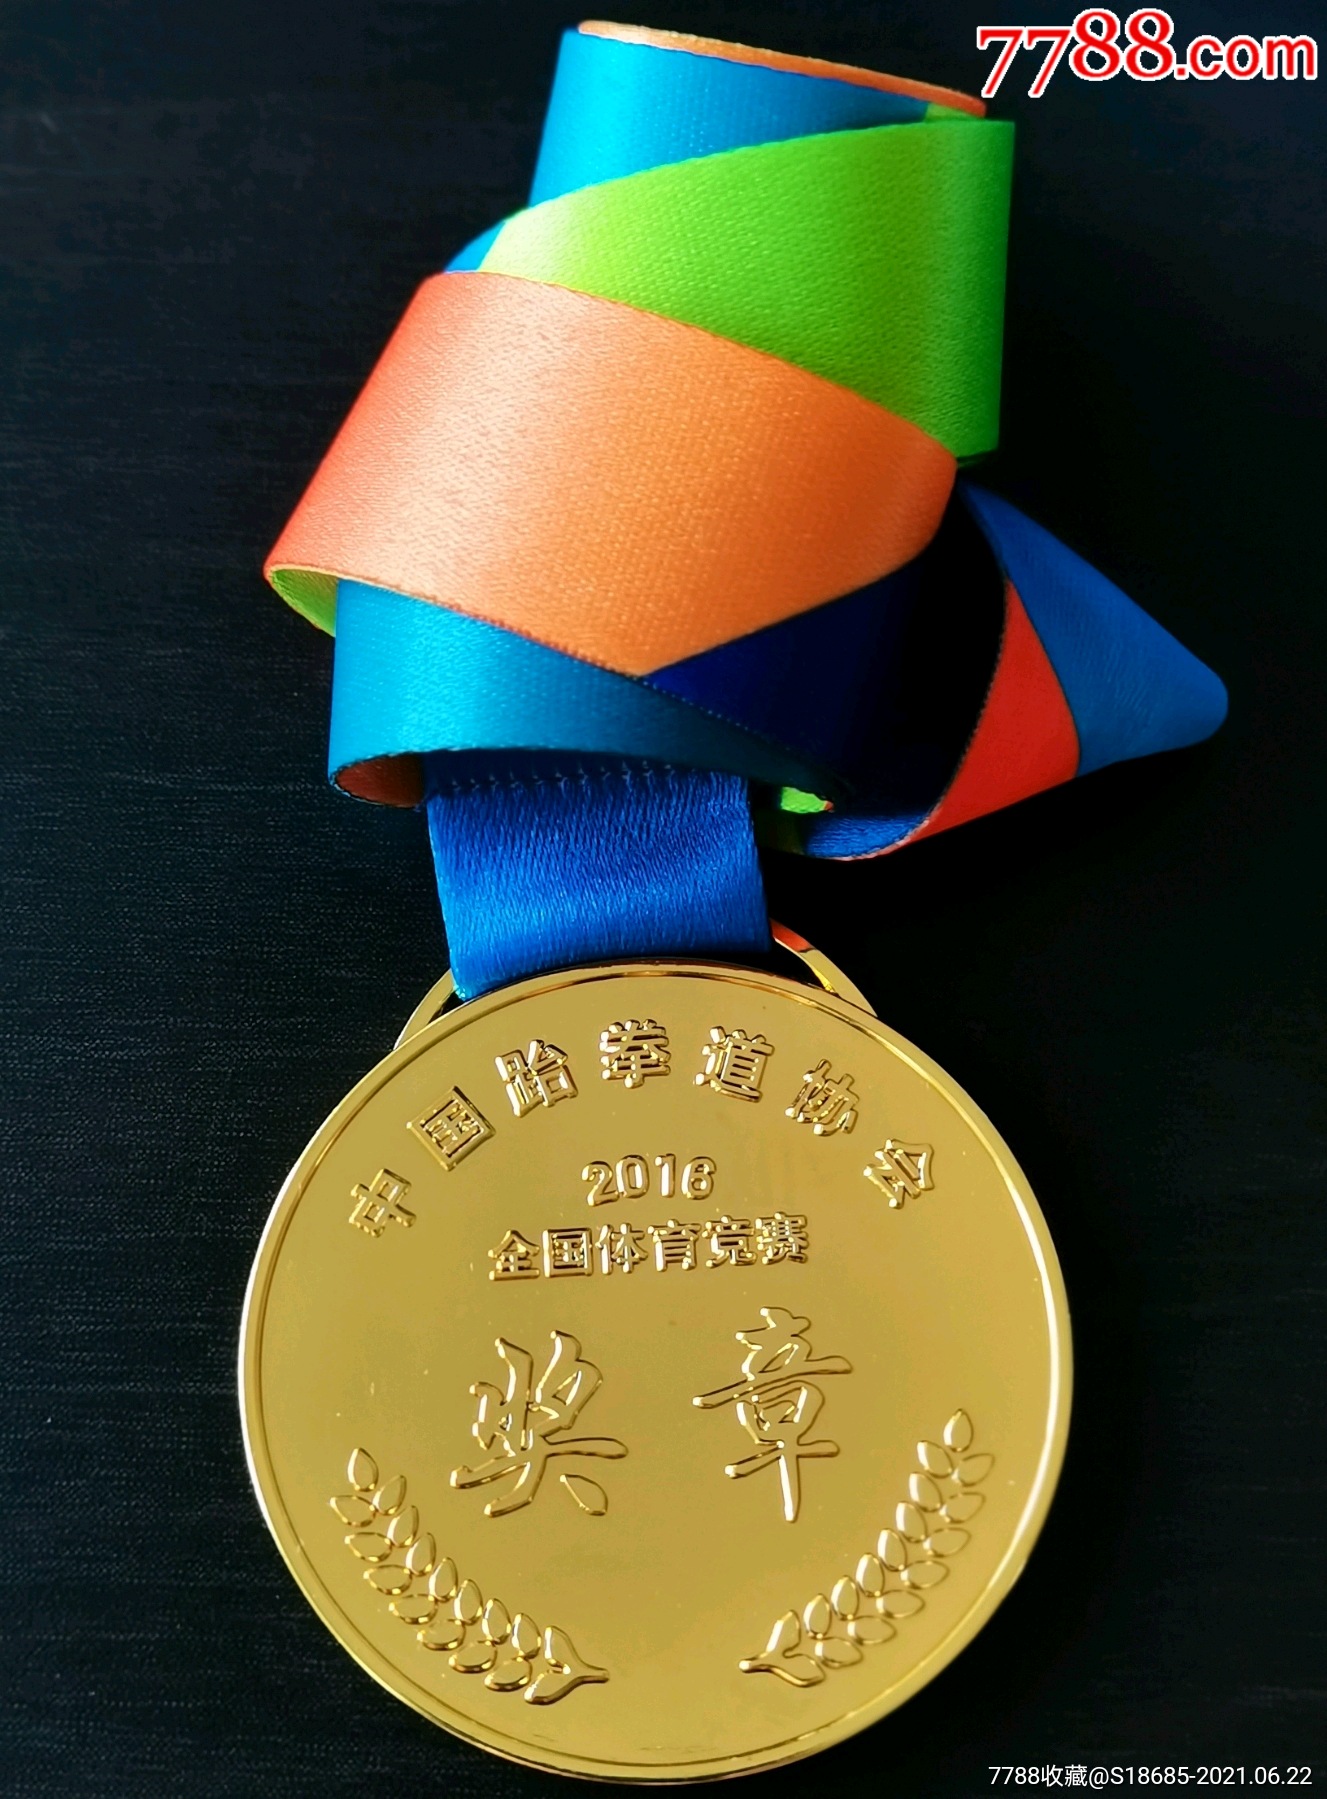 2016年全国跆拳道比赛金牌